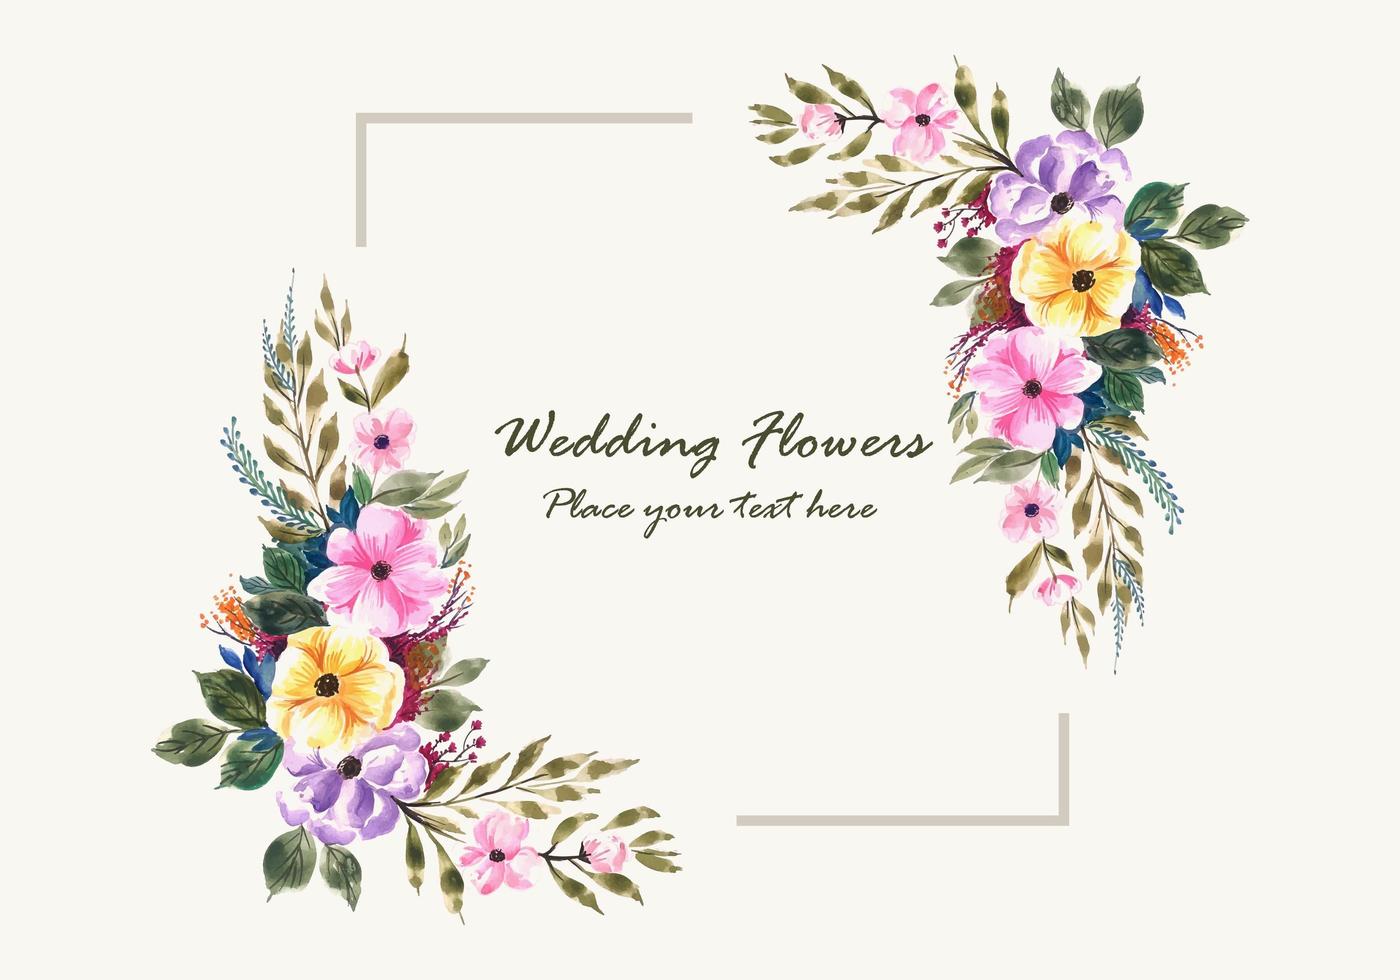 Hedendaags bruiloft uitnodiging bloemen frame kaart ontwerp - Download Free NW-28